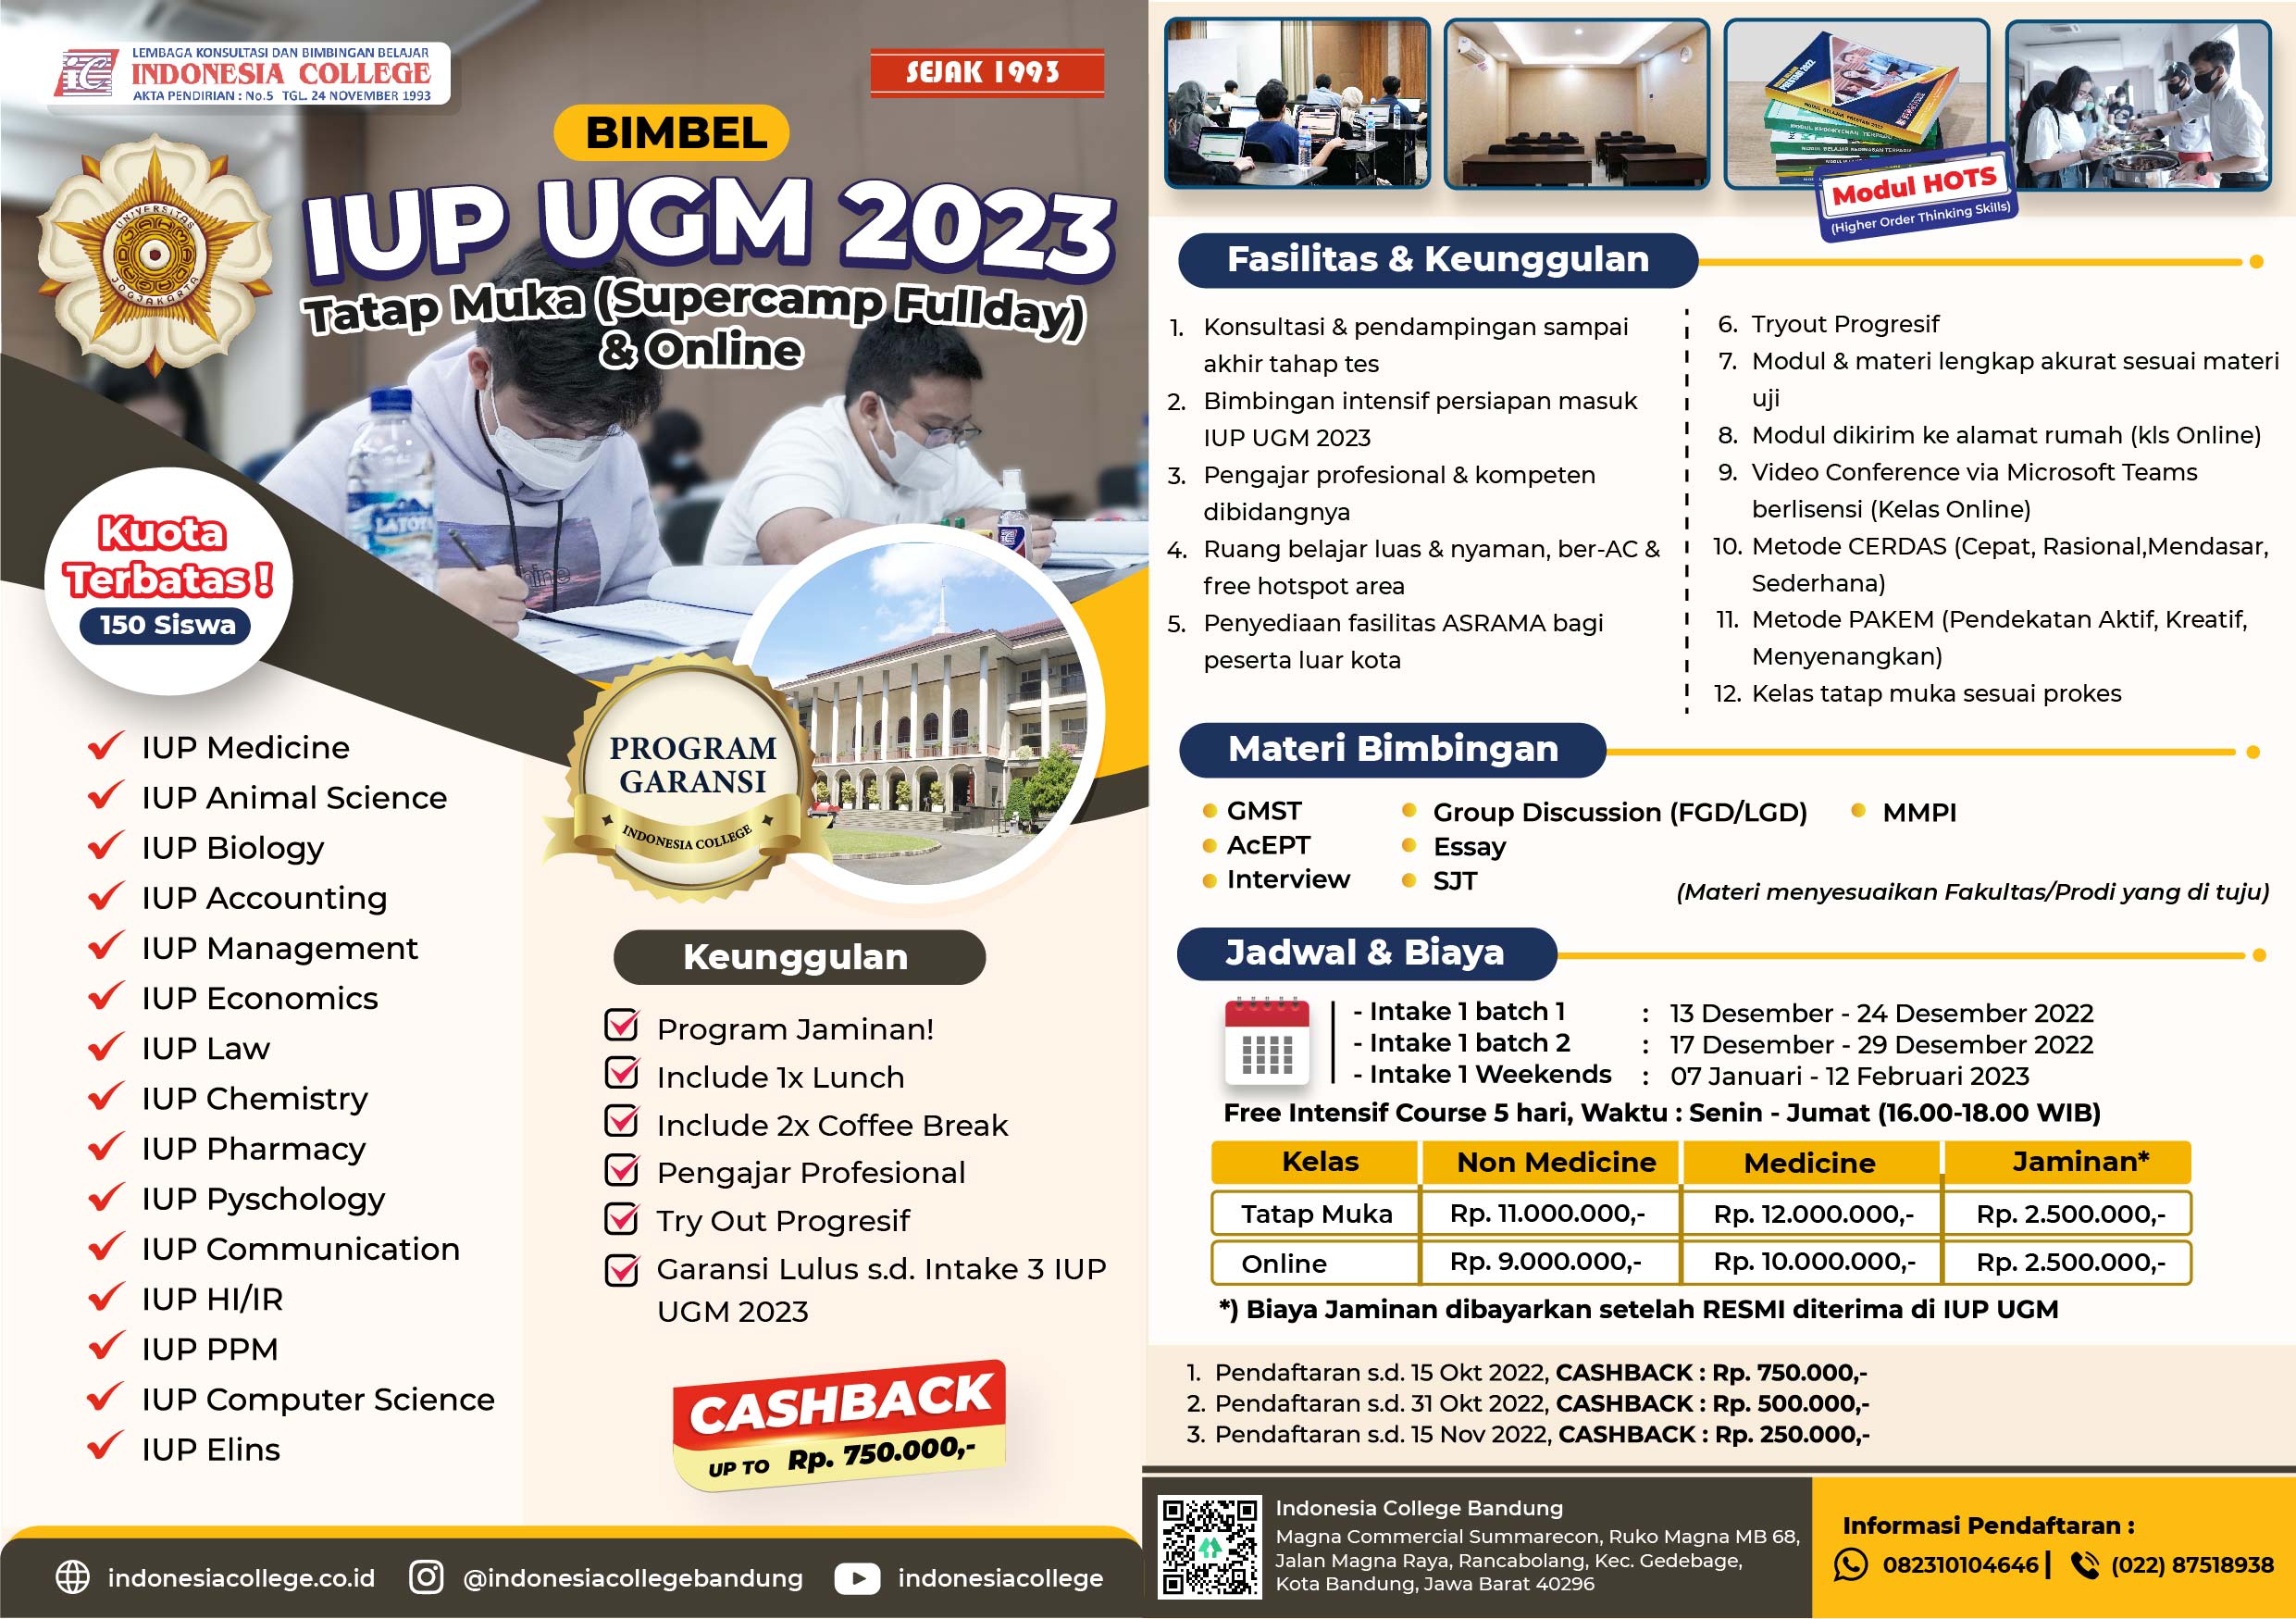 Bimbel IUP UGM 2023